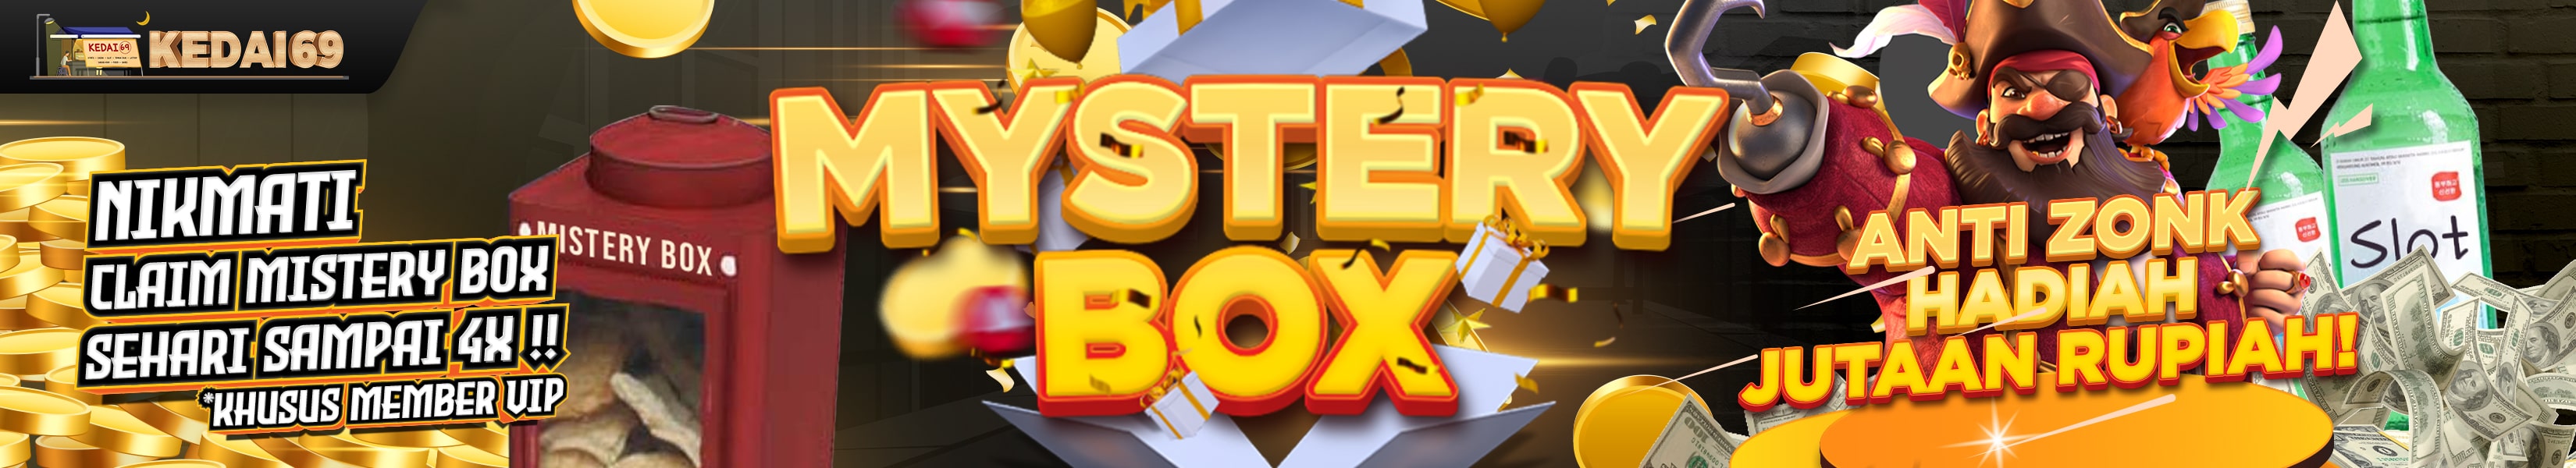 Mystery Box Kedai69